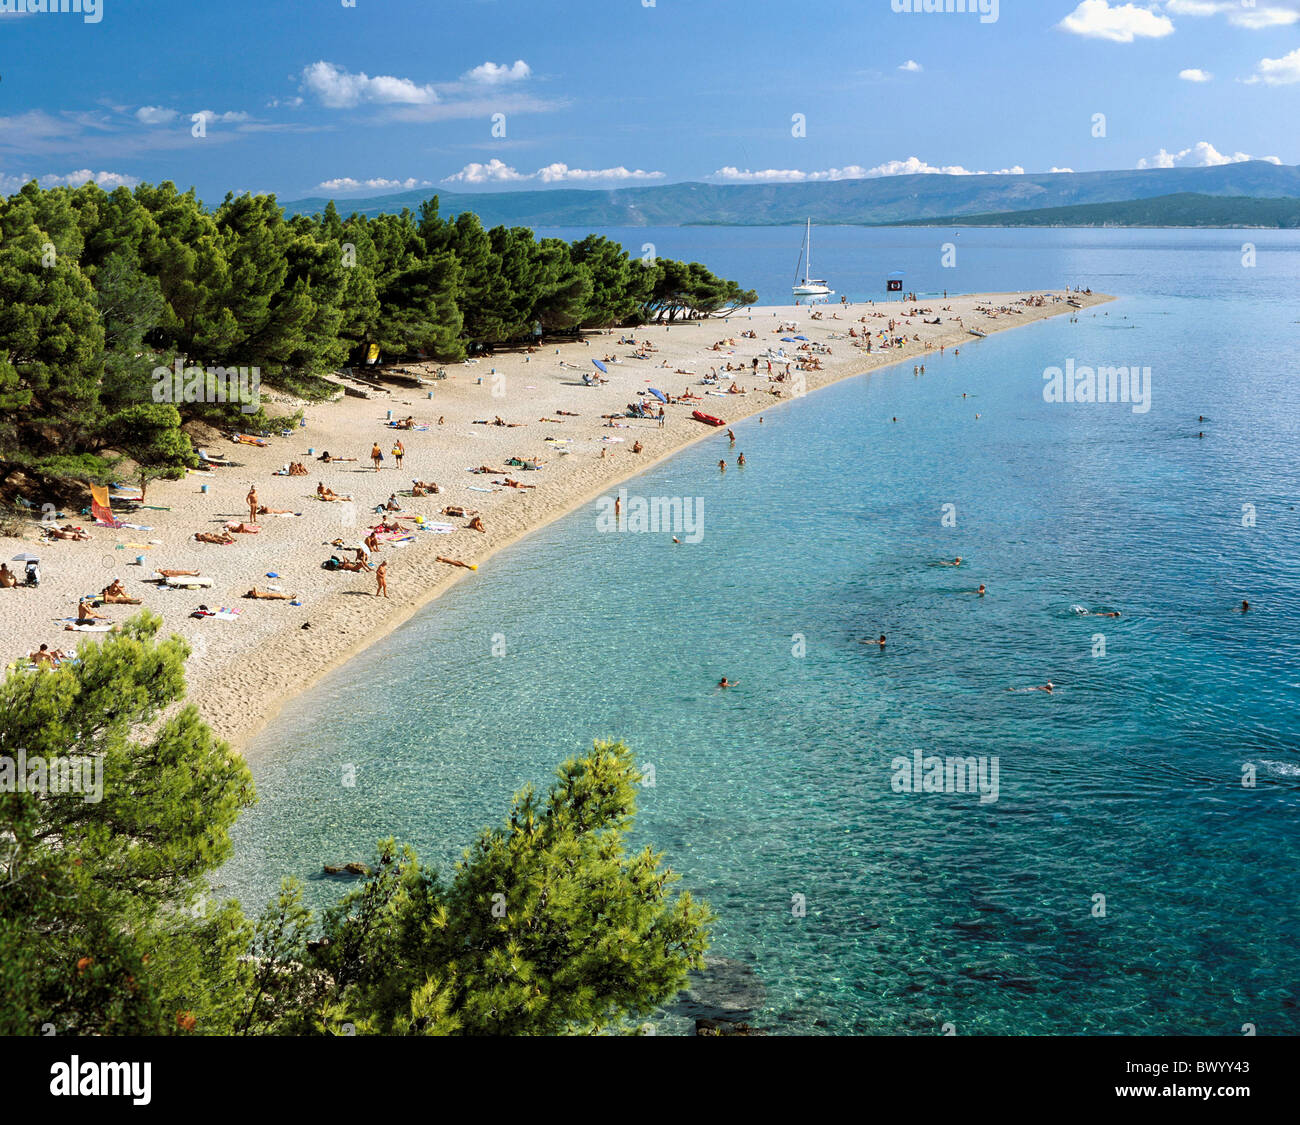 Badegäste Badestrand in der Nähe von Bol Dalmatien Urlaub Insel Insel Brac Kroatien Küste Meer Menschen Strand Muschel Stockfoto